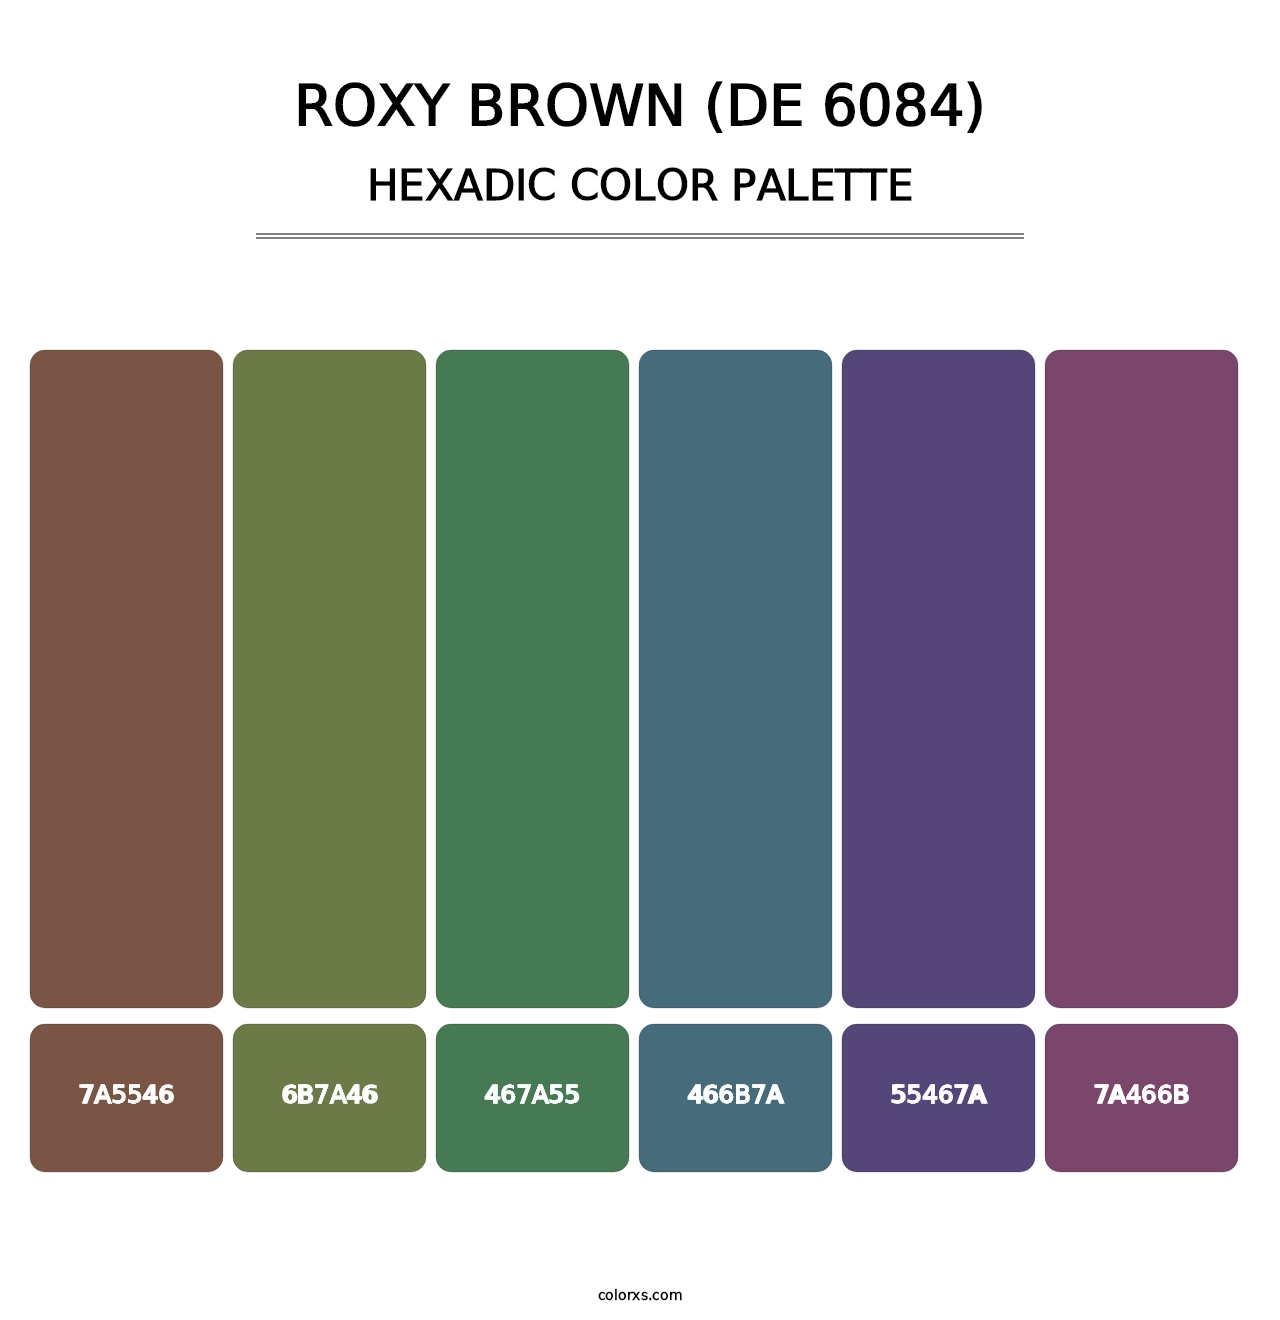 Roxy Brown (DE 6084) - Hexadic Color Palette